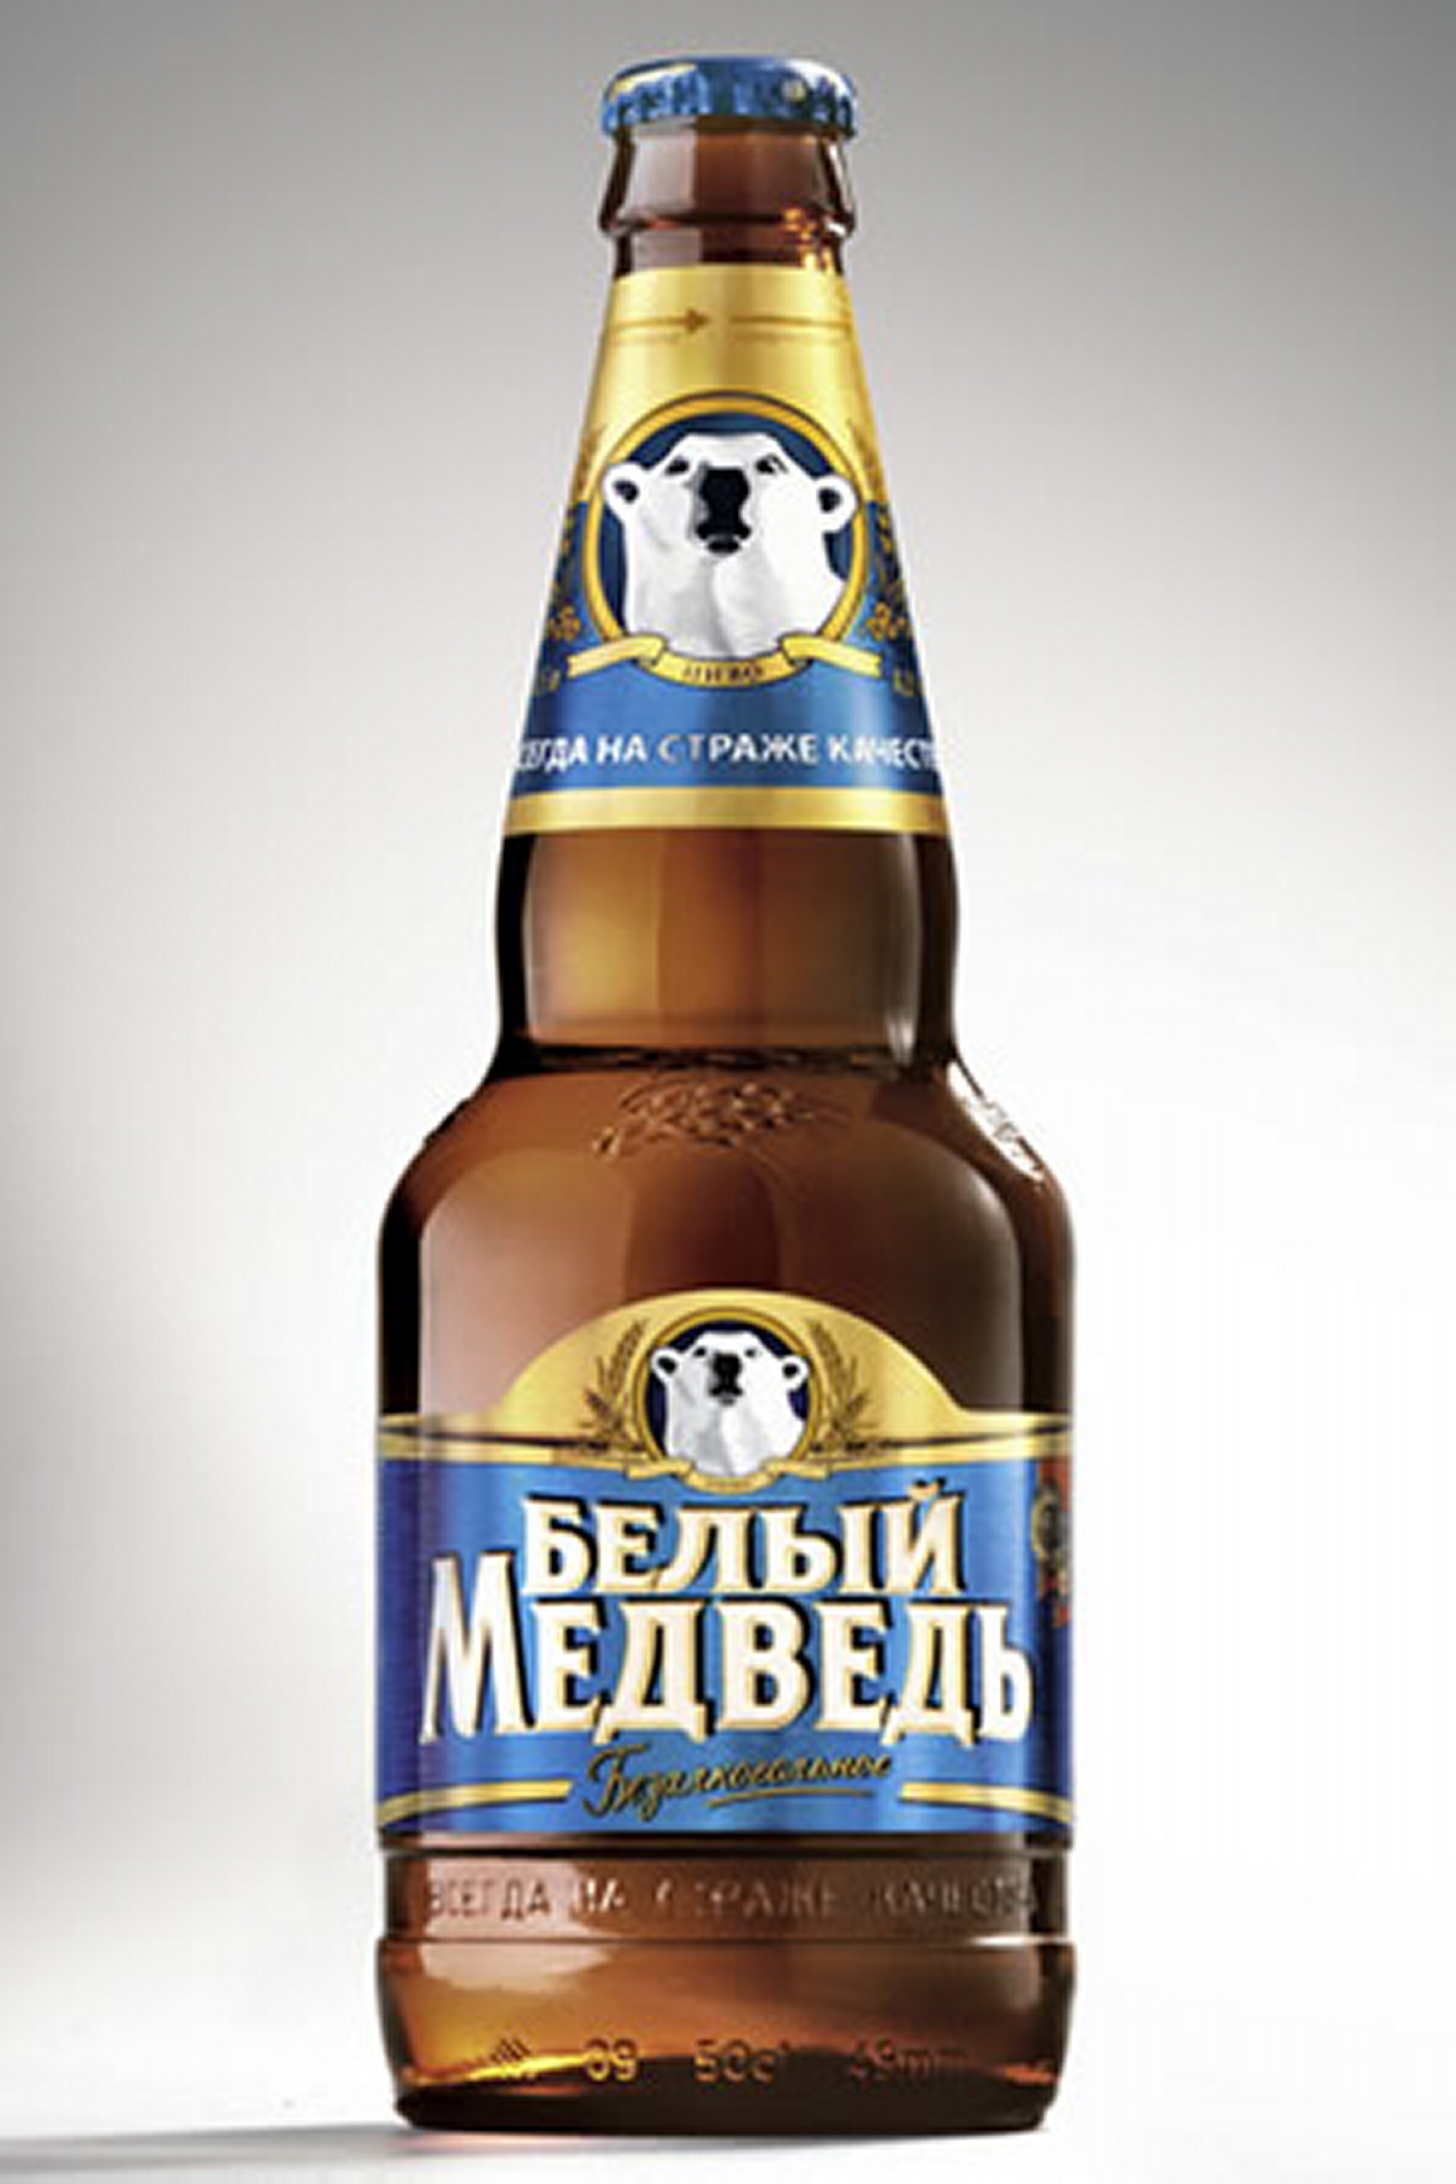 Нефильтрованное пиво в бутылках. Белый медведь нефильтрованное 1.5. Белый медведь пиво нефильтрованное 1.5. Белый медведь светлое нефильтрованное. Пиво белый медведь безалкогольное.